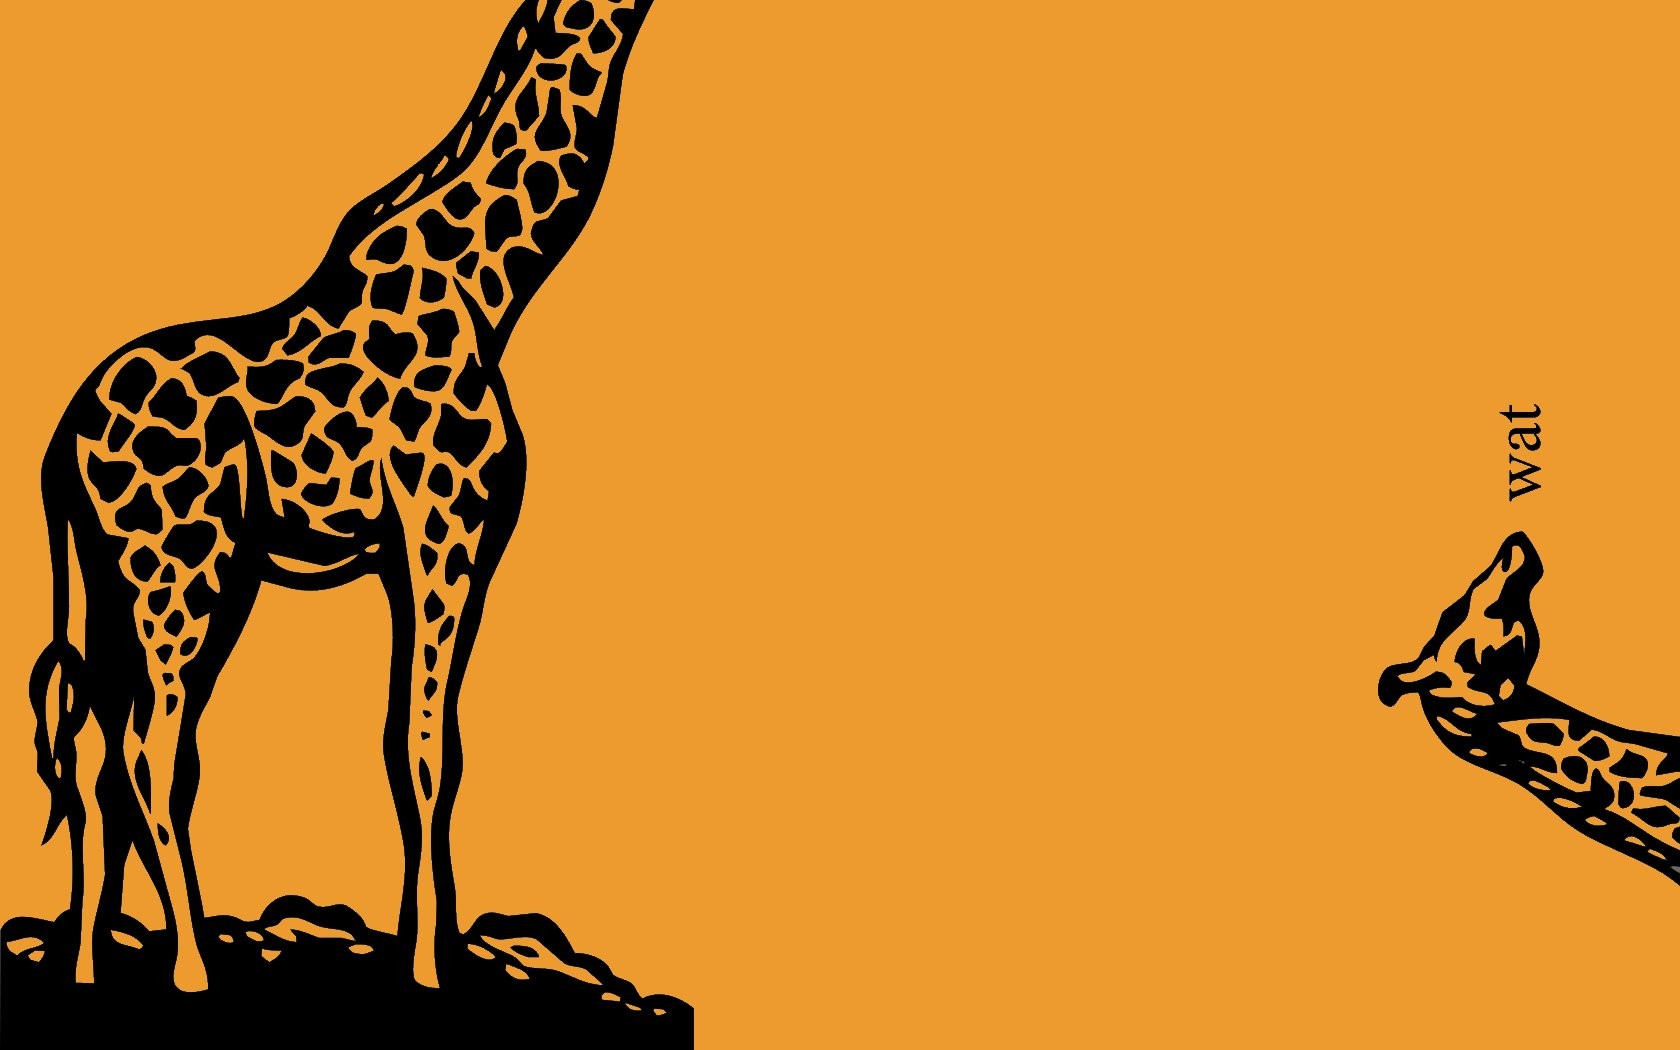 General 1680x1050 giraffes animals artwork orange background mammals simple background